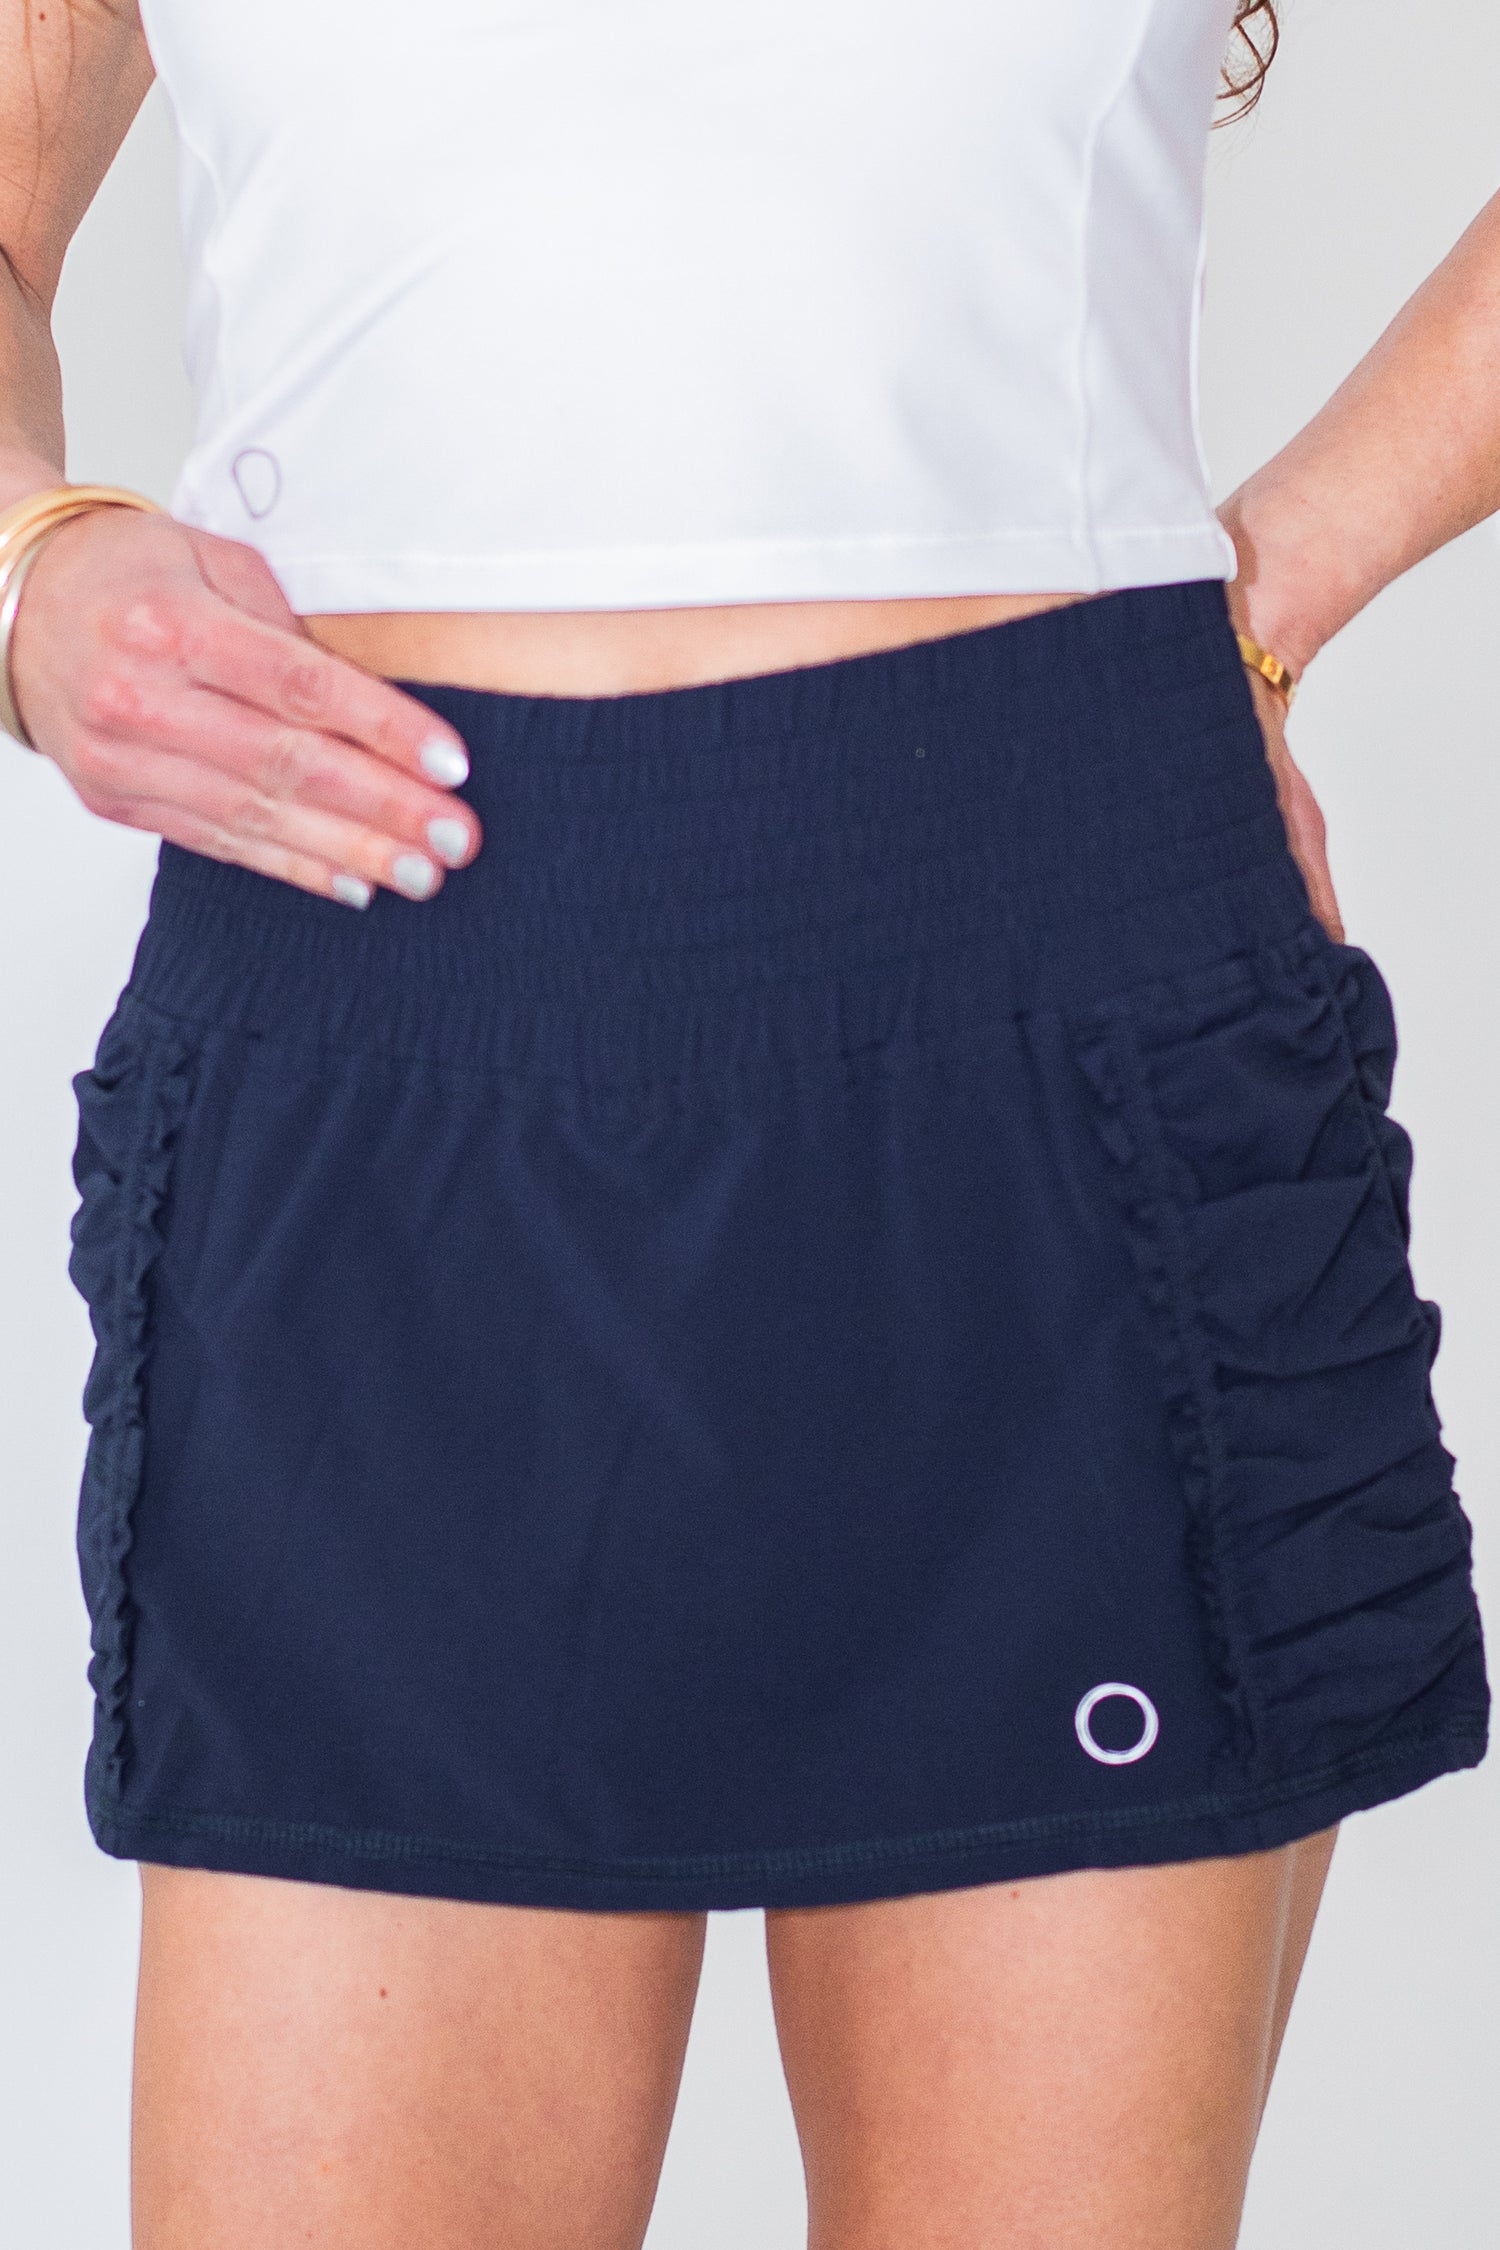 Apple Blossom Athletic Skirt